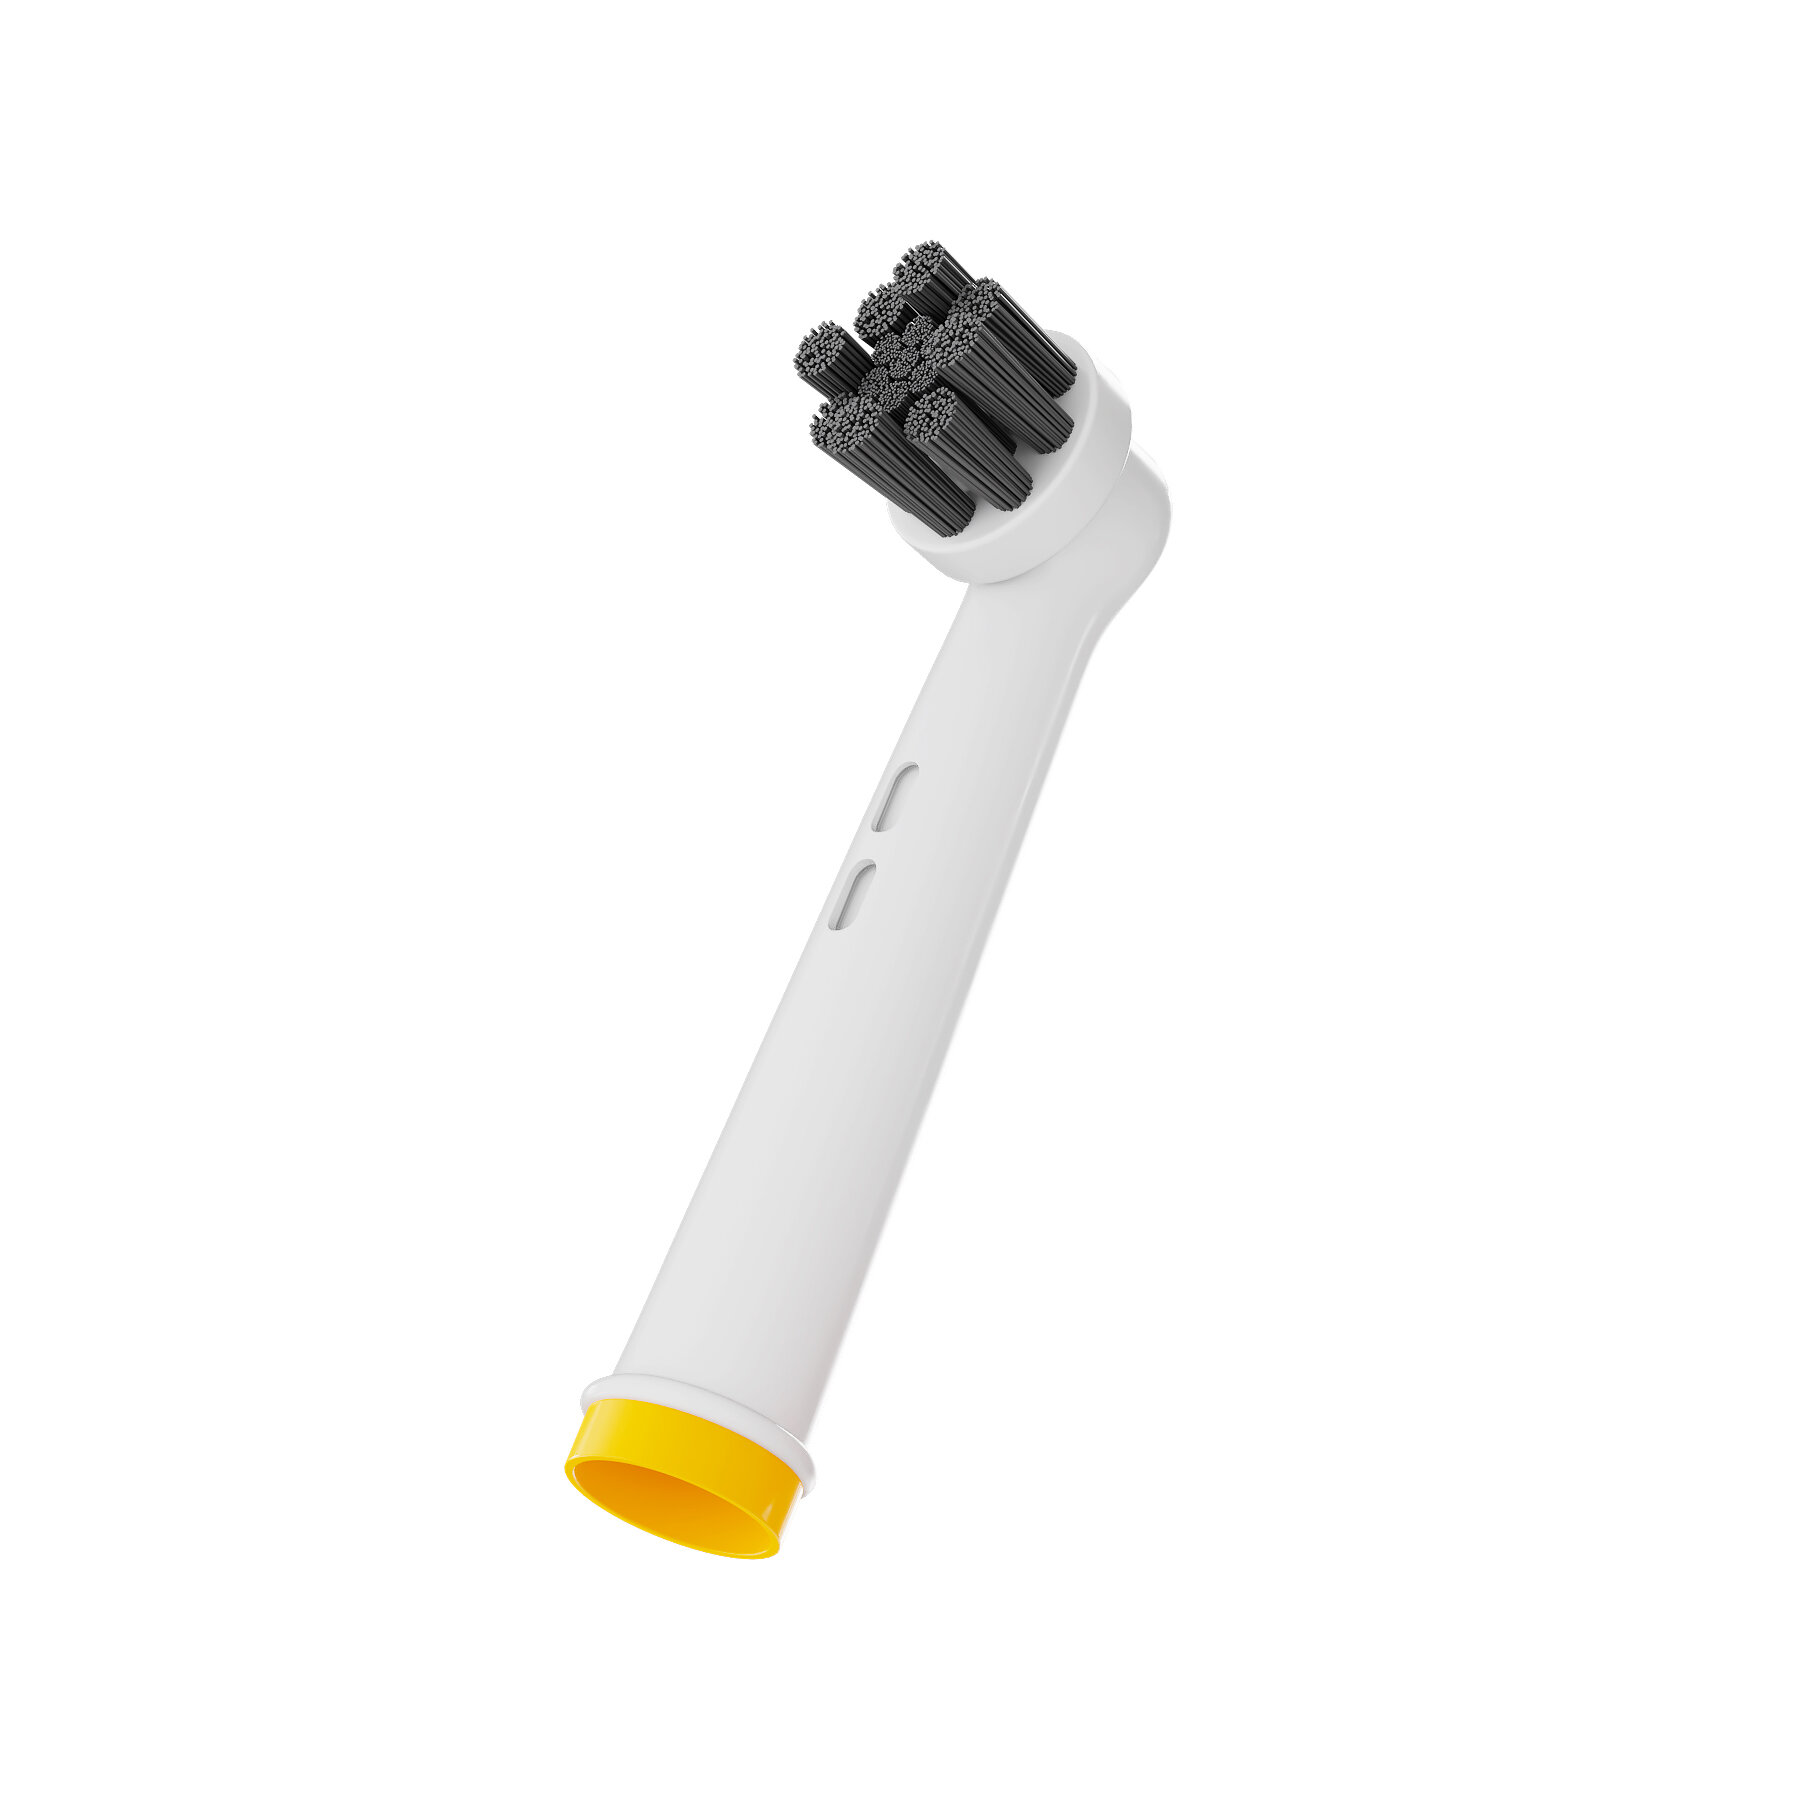 Насадка 5Lights EB58-X Charcoal для электрической зубной щетки Oral-b, совместимая, средней жесткости (Жёлтый)